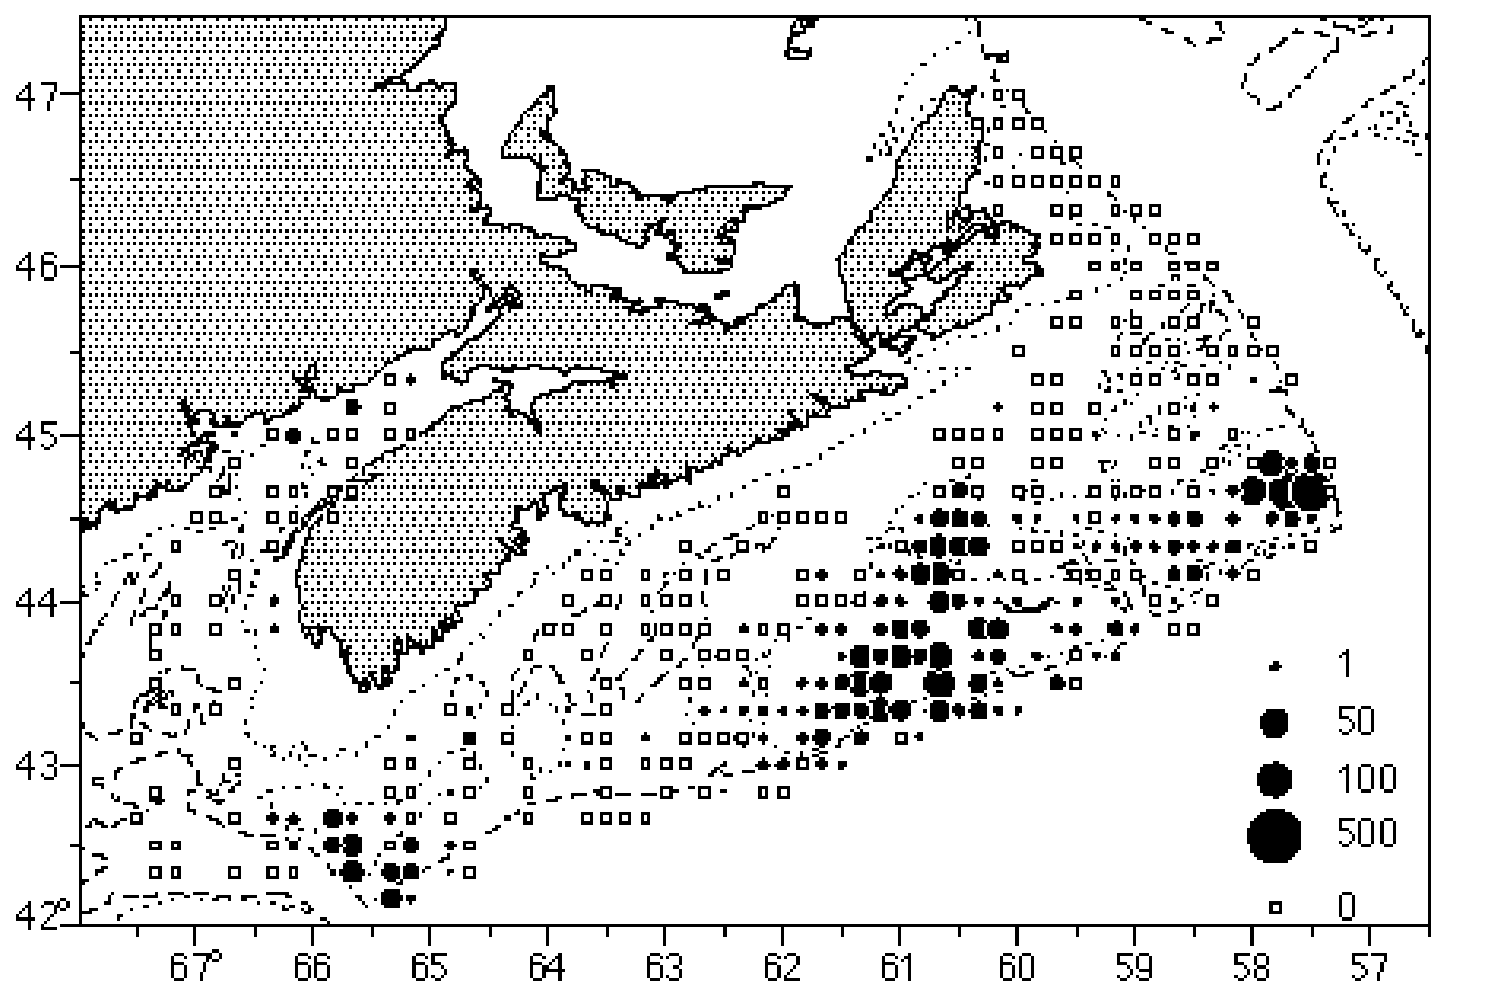 Figure 12 - Biomasse de la limande à queue jaune (kg par trait) selon les relevés d'été sur les poissons de fond